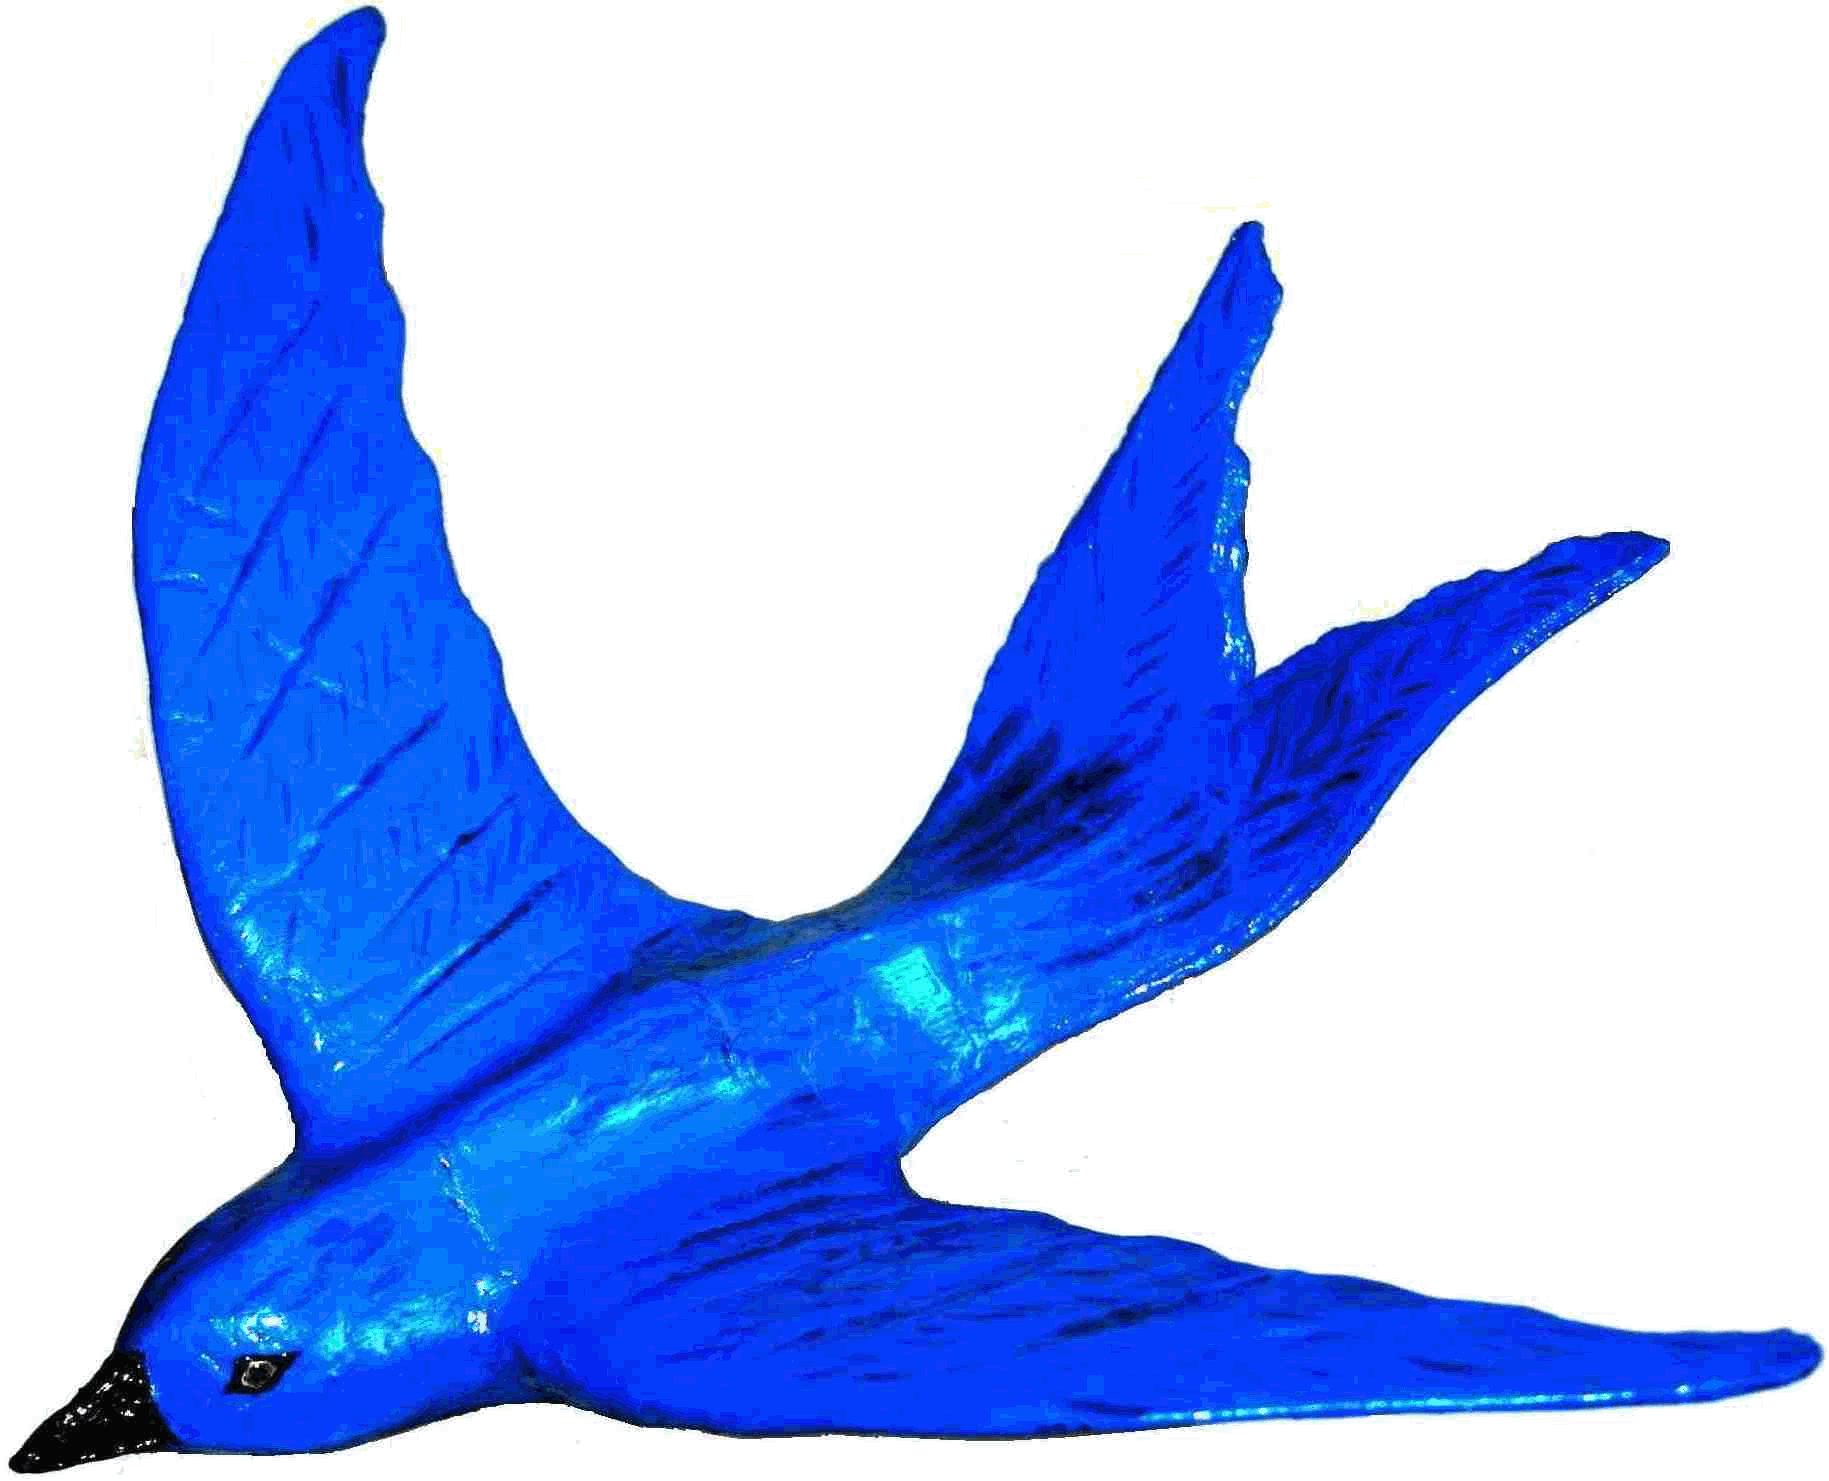 Blue Bird Brand Logo - BLUEPLANET ECOSTAR BLUE BIRD LEGEND INTERNATIONAL BLUEBIRD BRAND ...